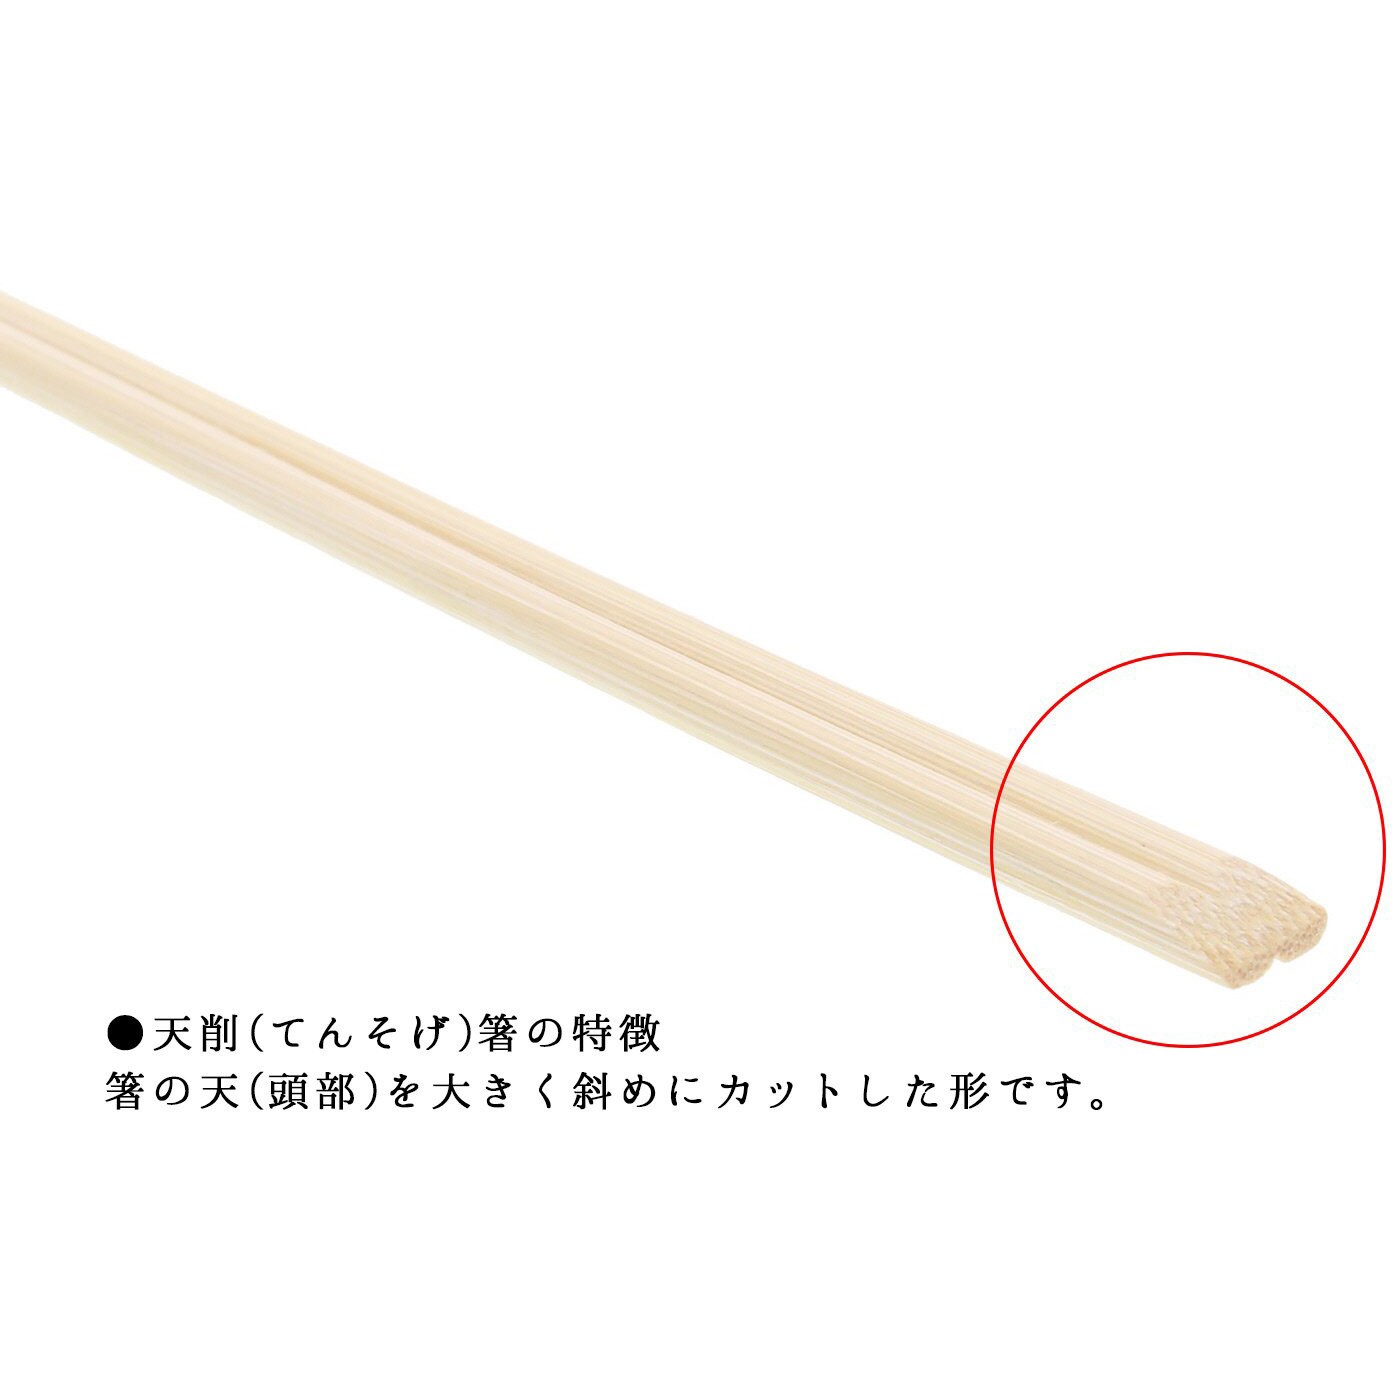 割り箸 竹 天削箸